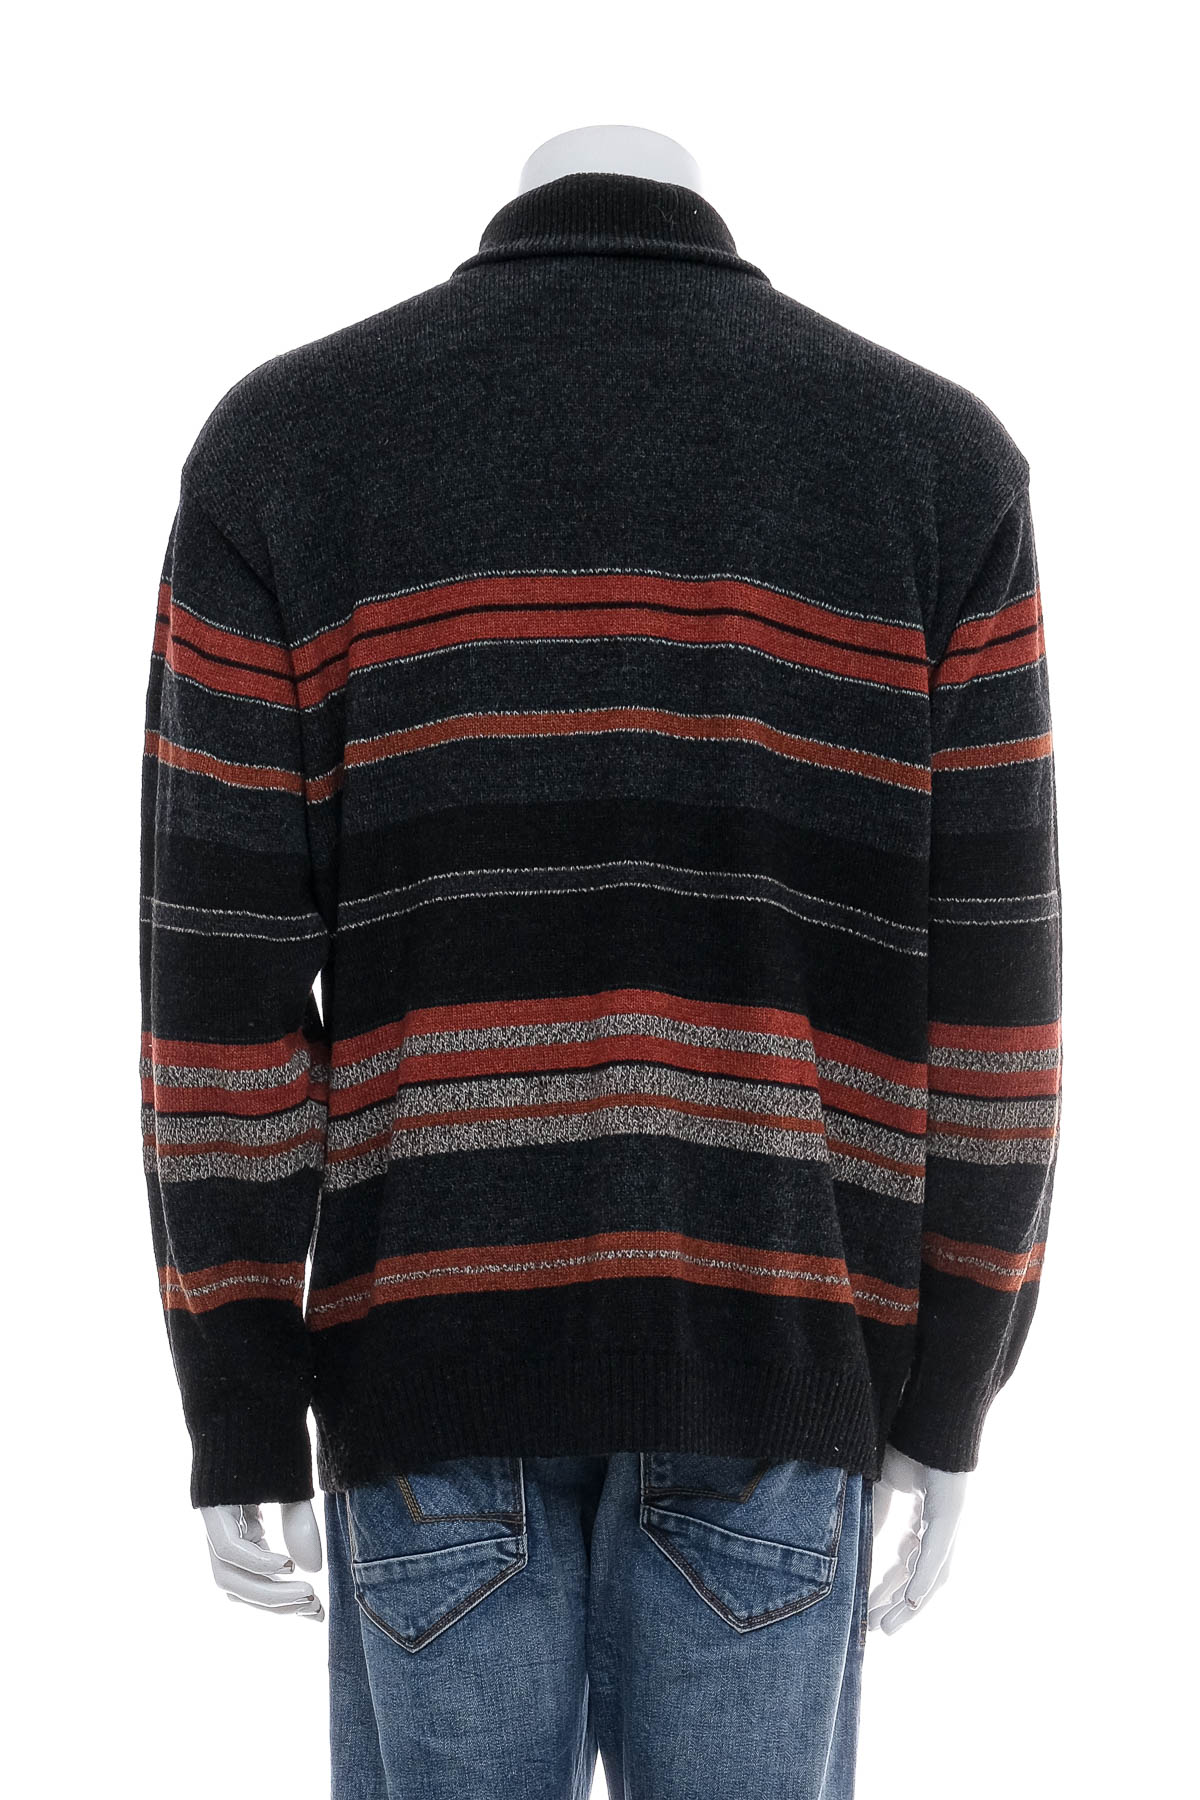 Men's sweater - Larusso - 1